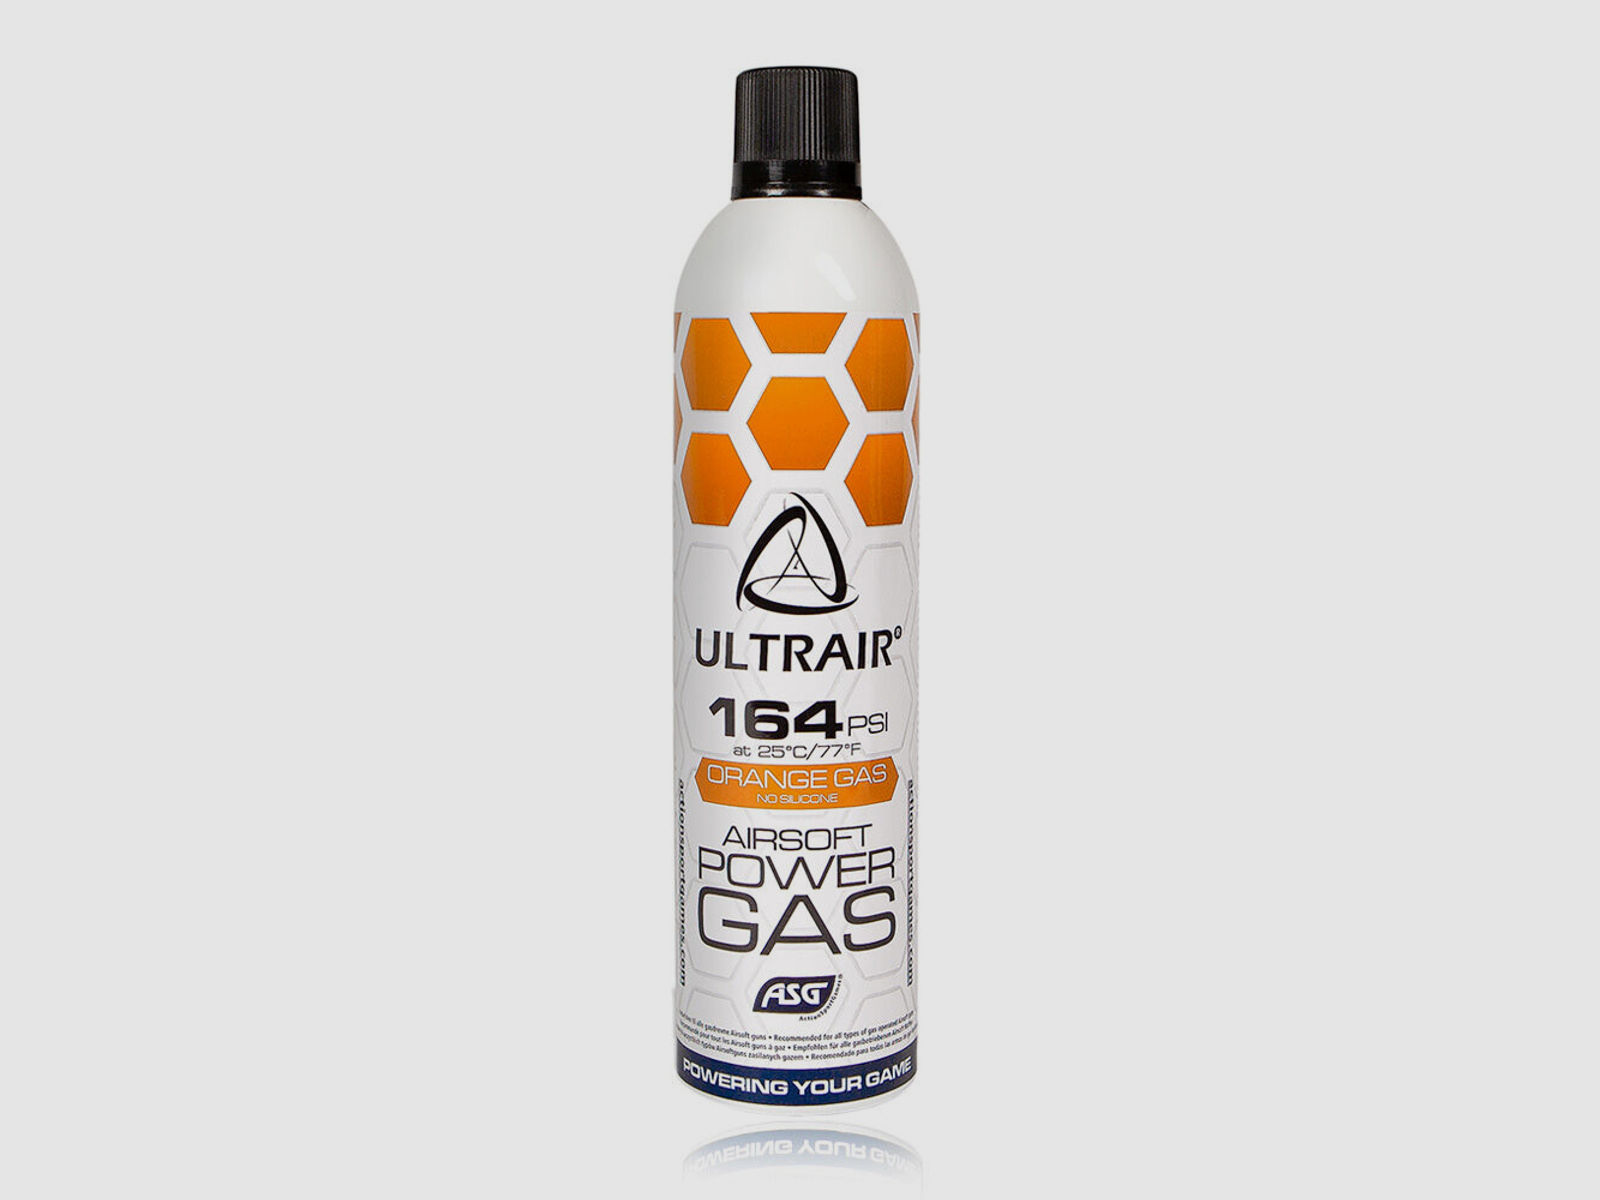 ASG Ultrair Medium Power Airsoftgas Orange 164 PSI - 570 ml